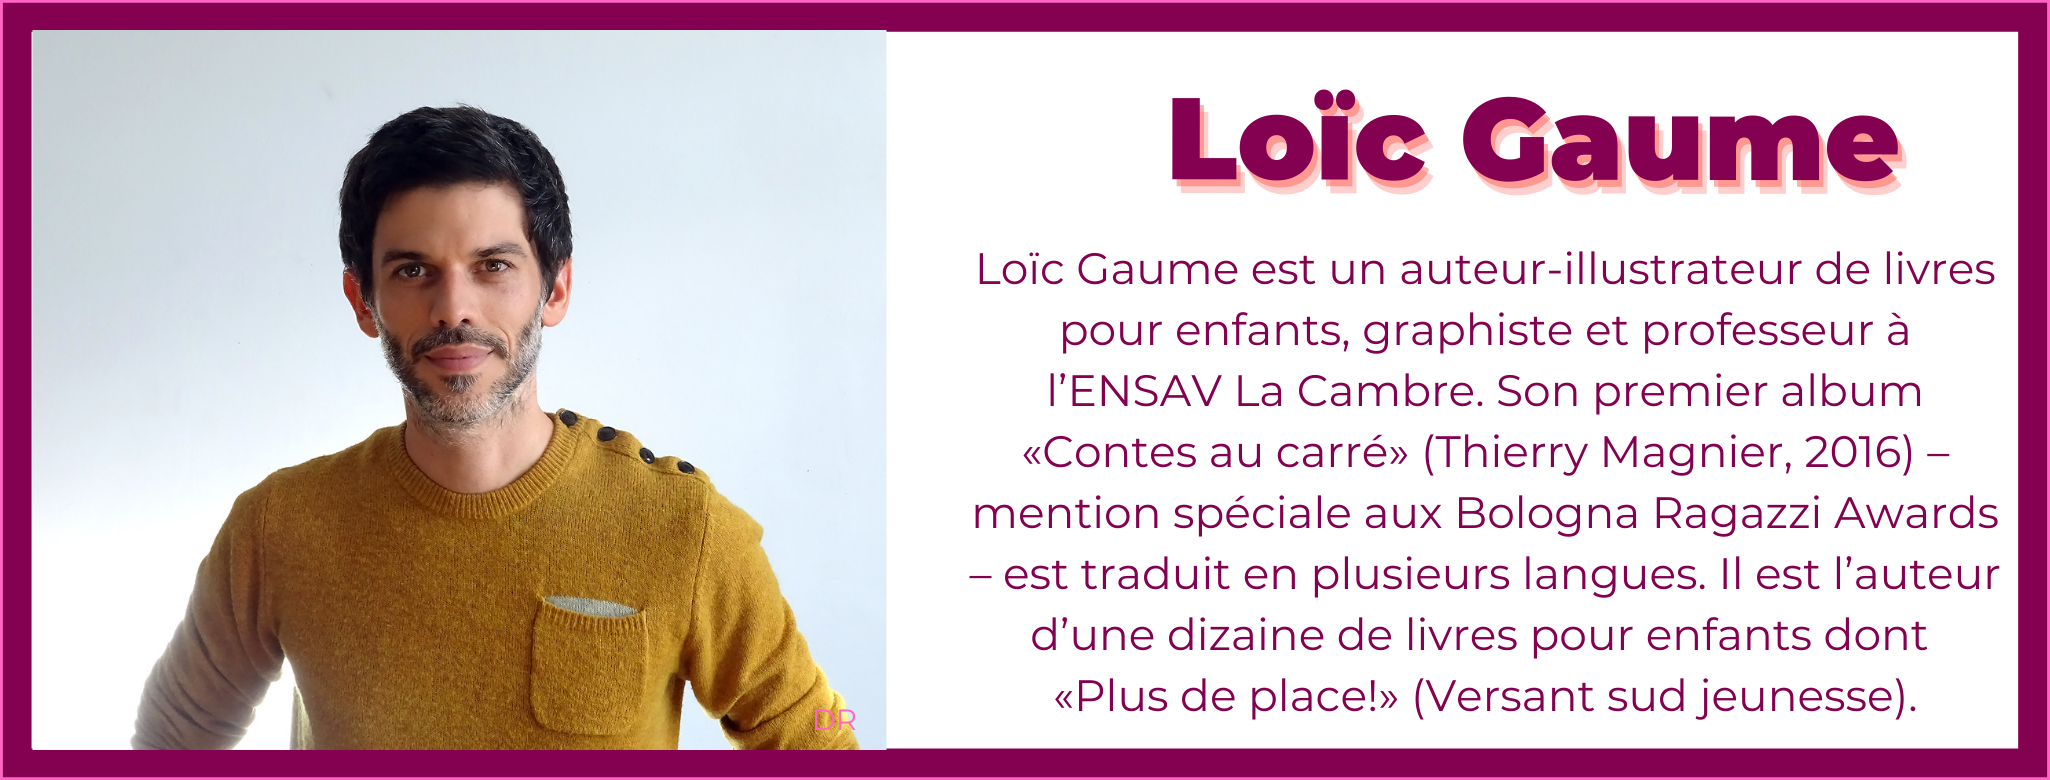 2. Loic Gaume